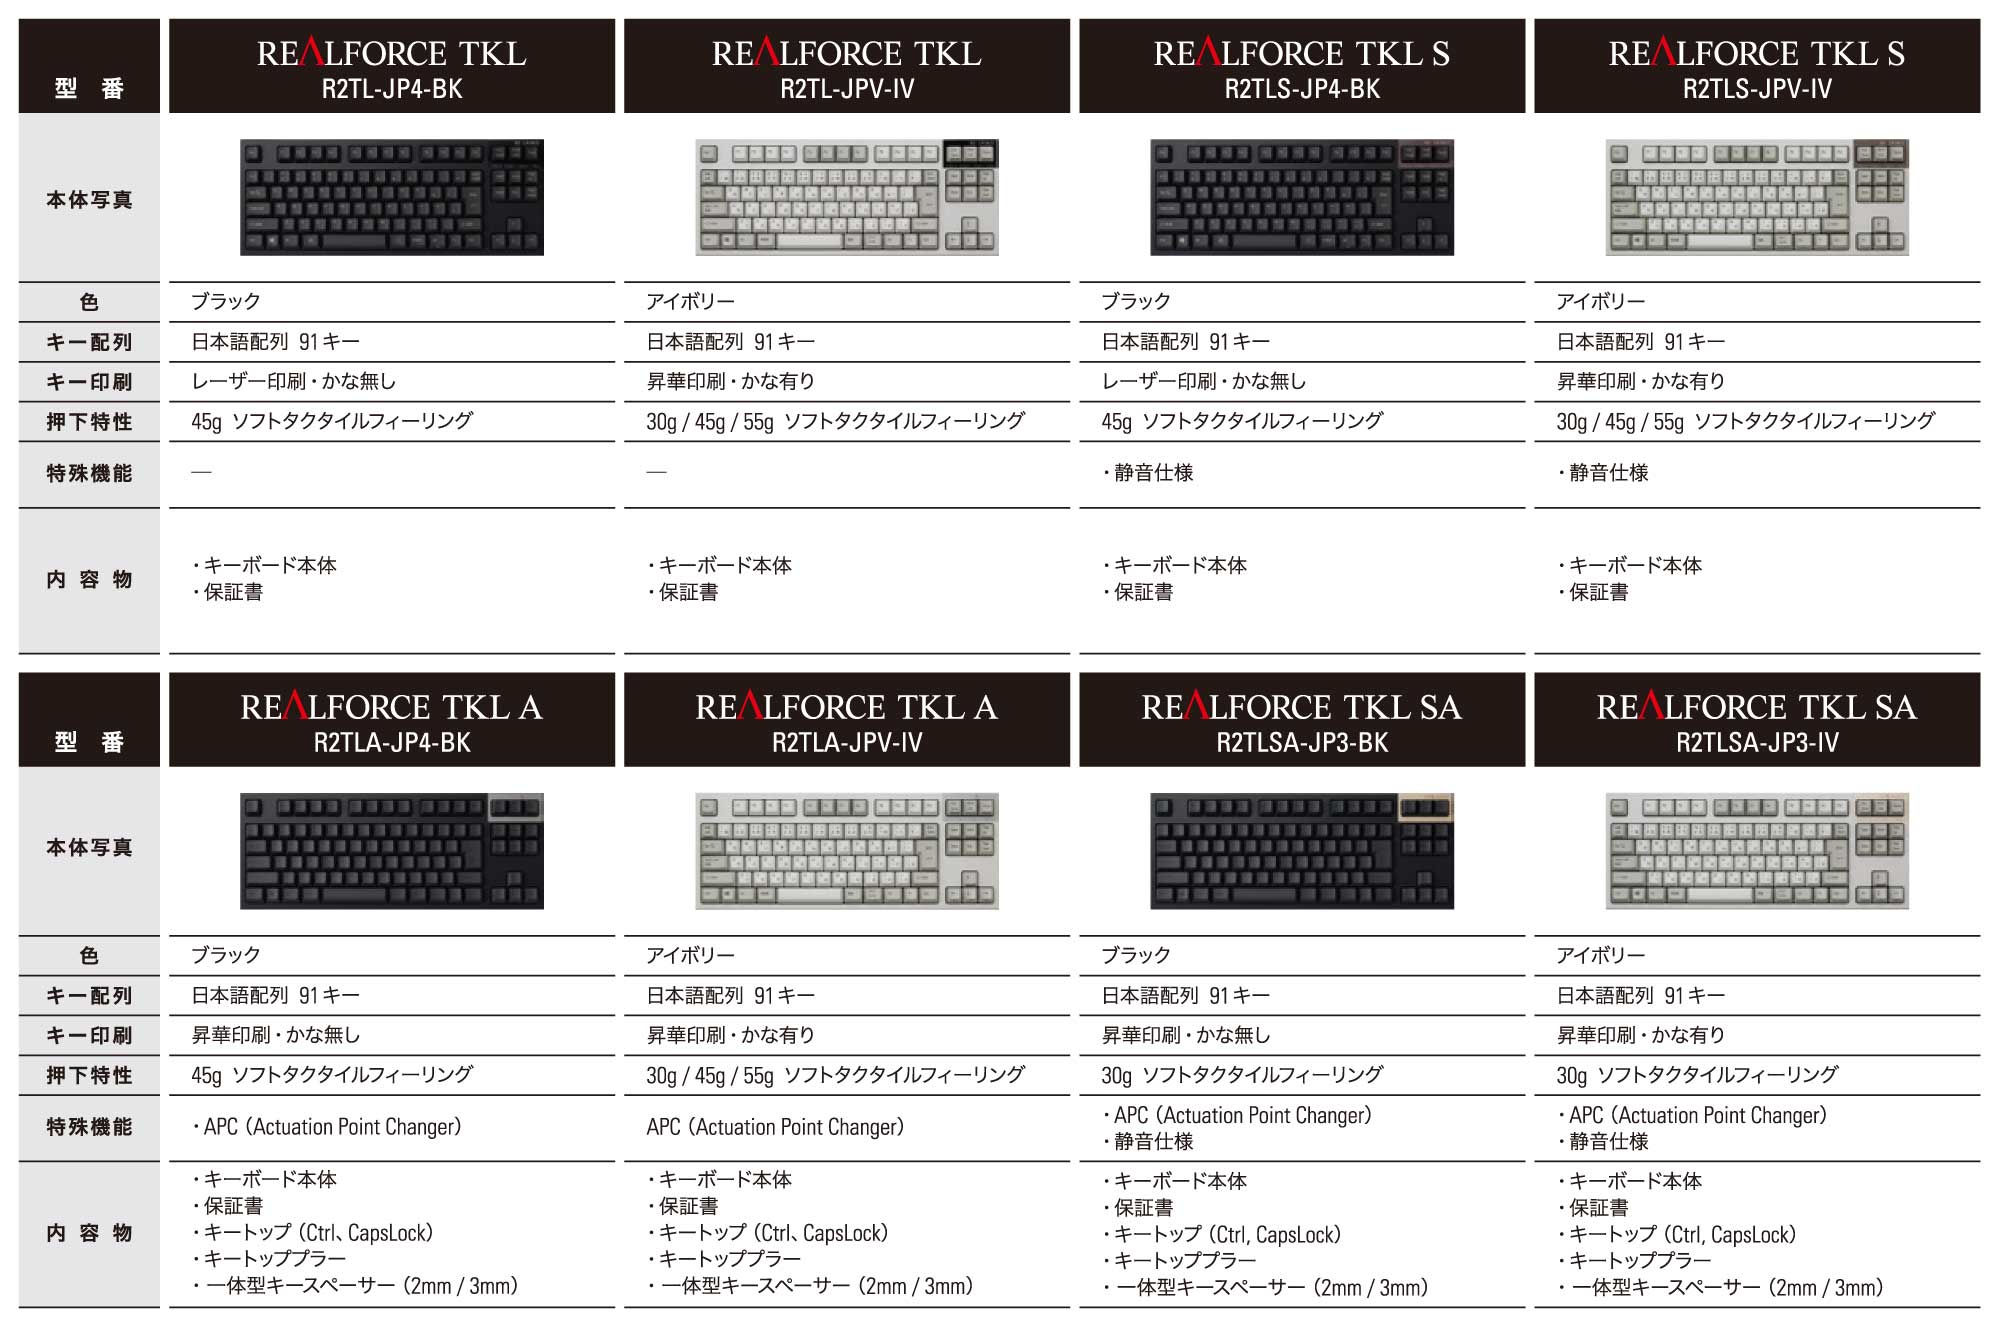 REALFORCE ブランドの PC 用テンキーレスキーボードを8機種発売（2018